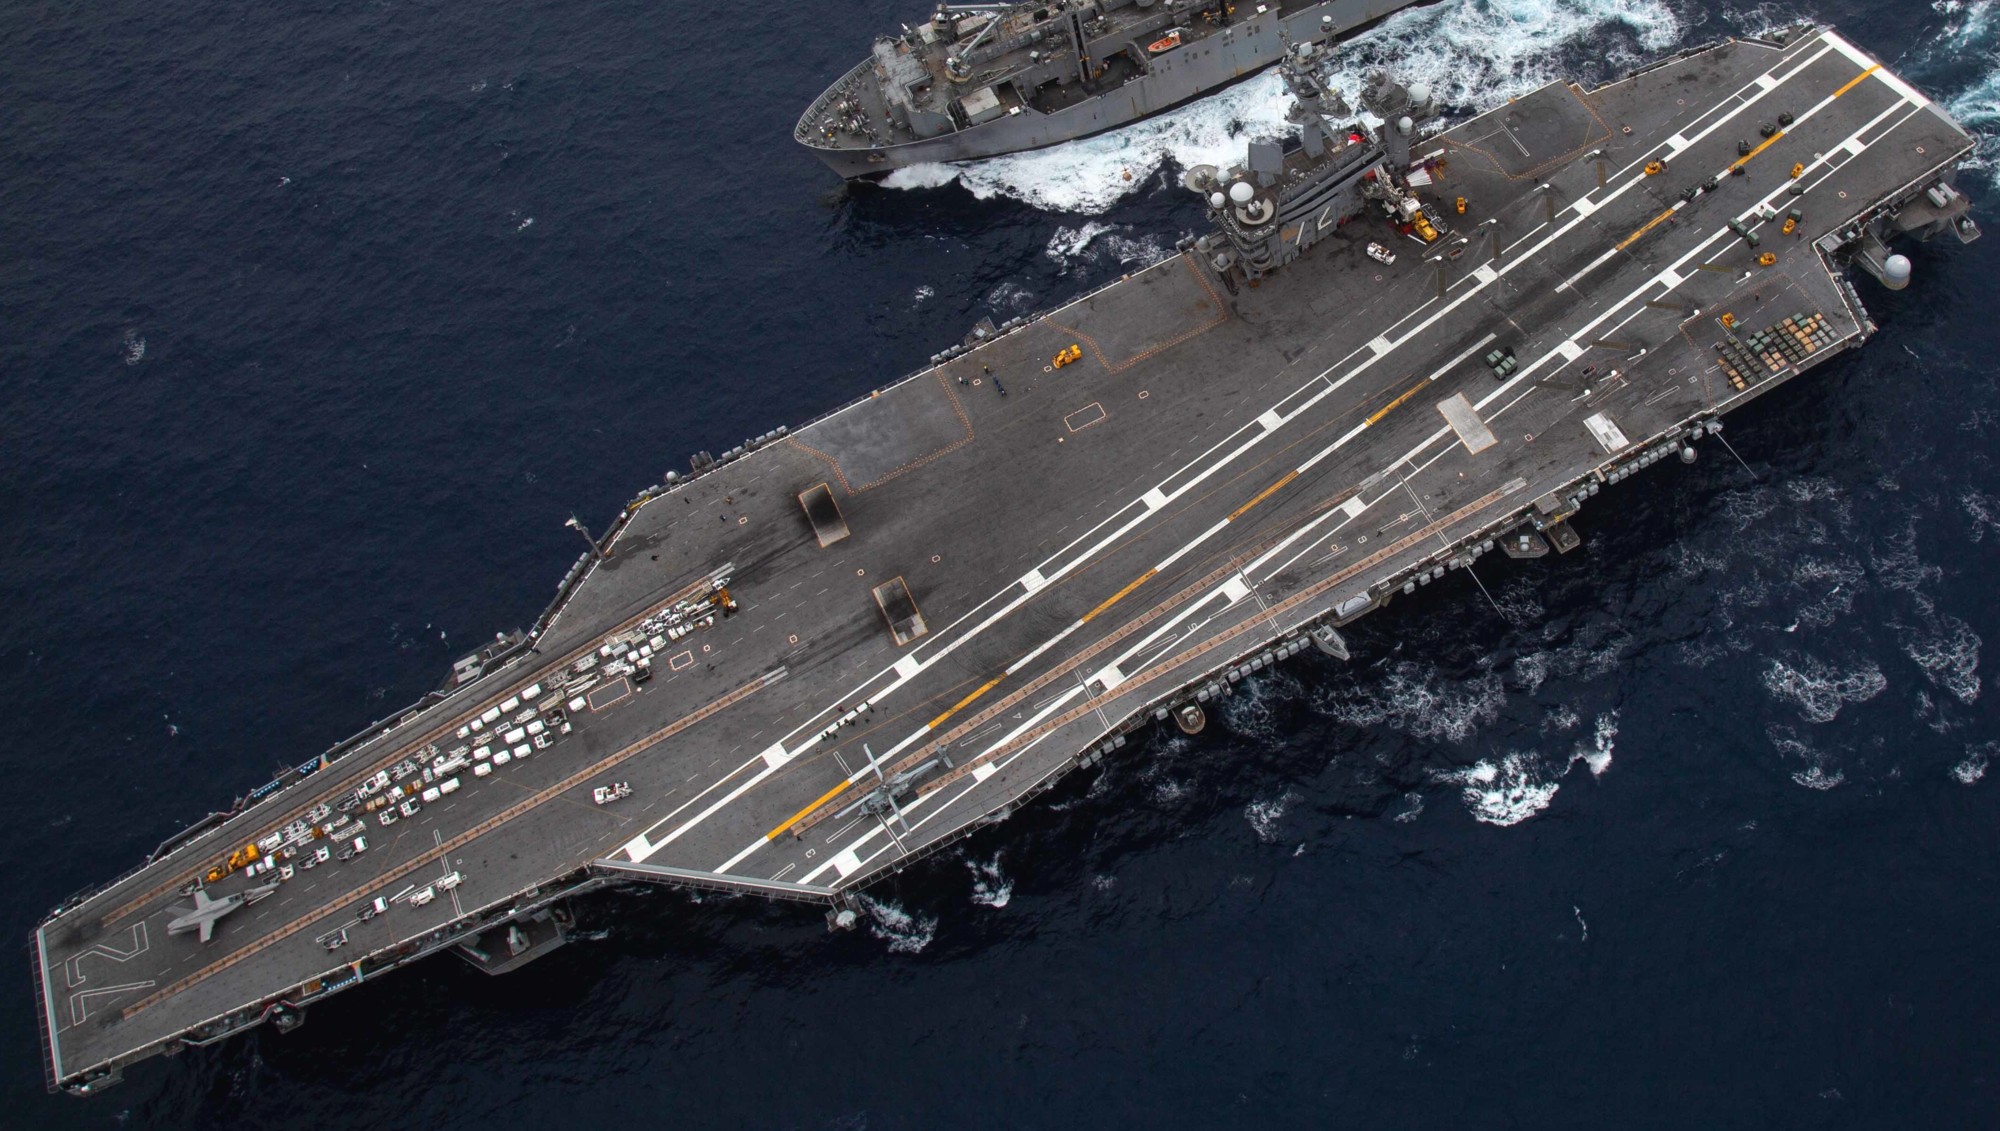 cvn-72 uss abraham lincoln nimitz class aircraft carrier us navy 42 ammunition onload